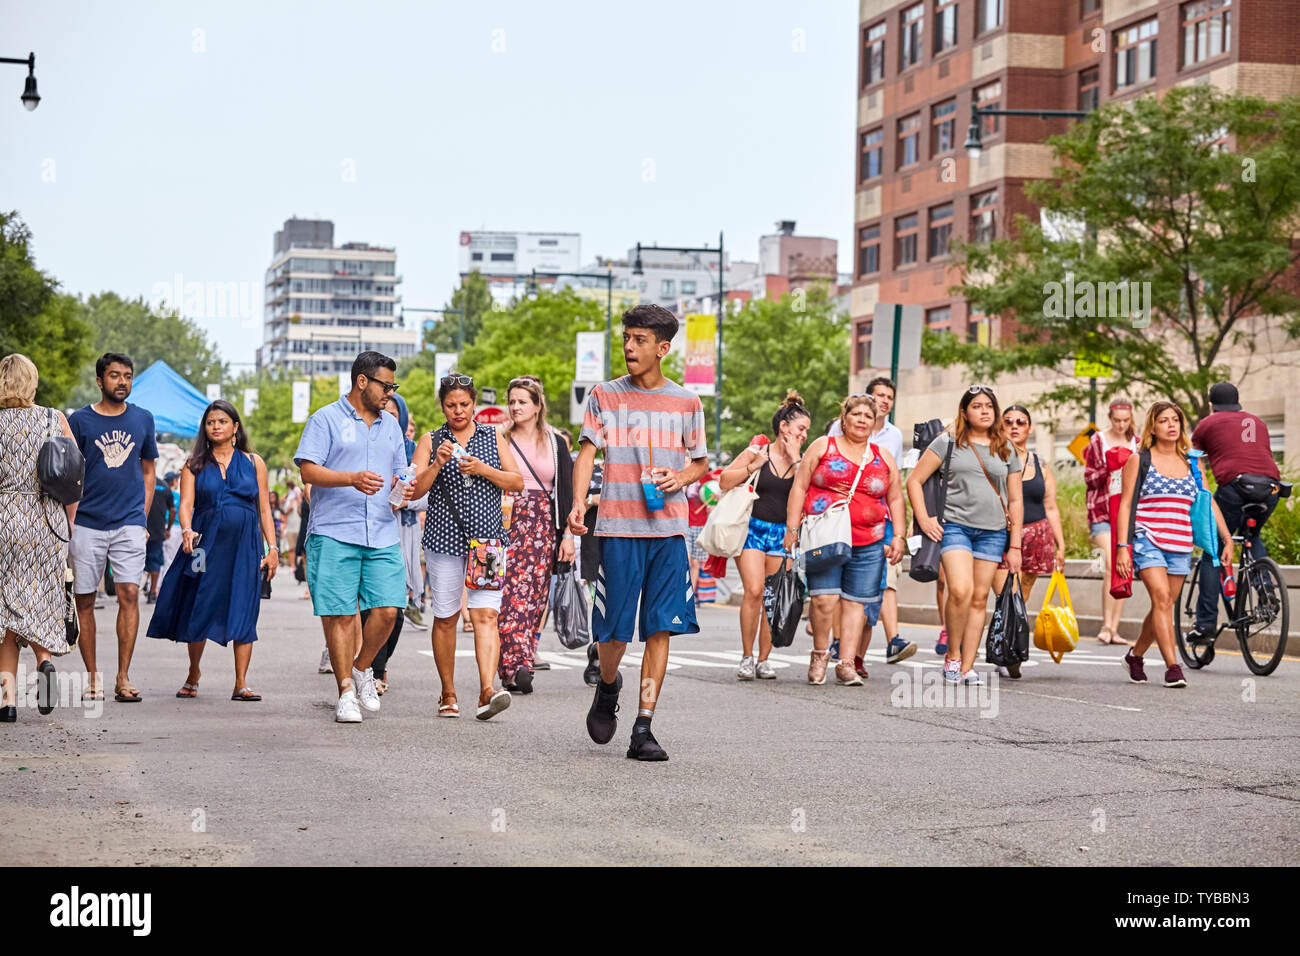 New York, USA - Juli 04, 2018: Die Menschen laufen 4. Juli Feuerwerk in der Gantry Plaza State Park während der bundesweiten Feiertag in den Usa com zu sehen Stockfoto